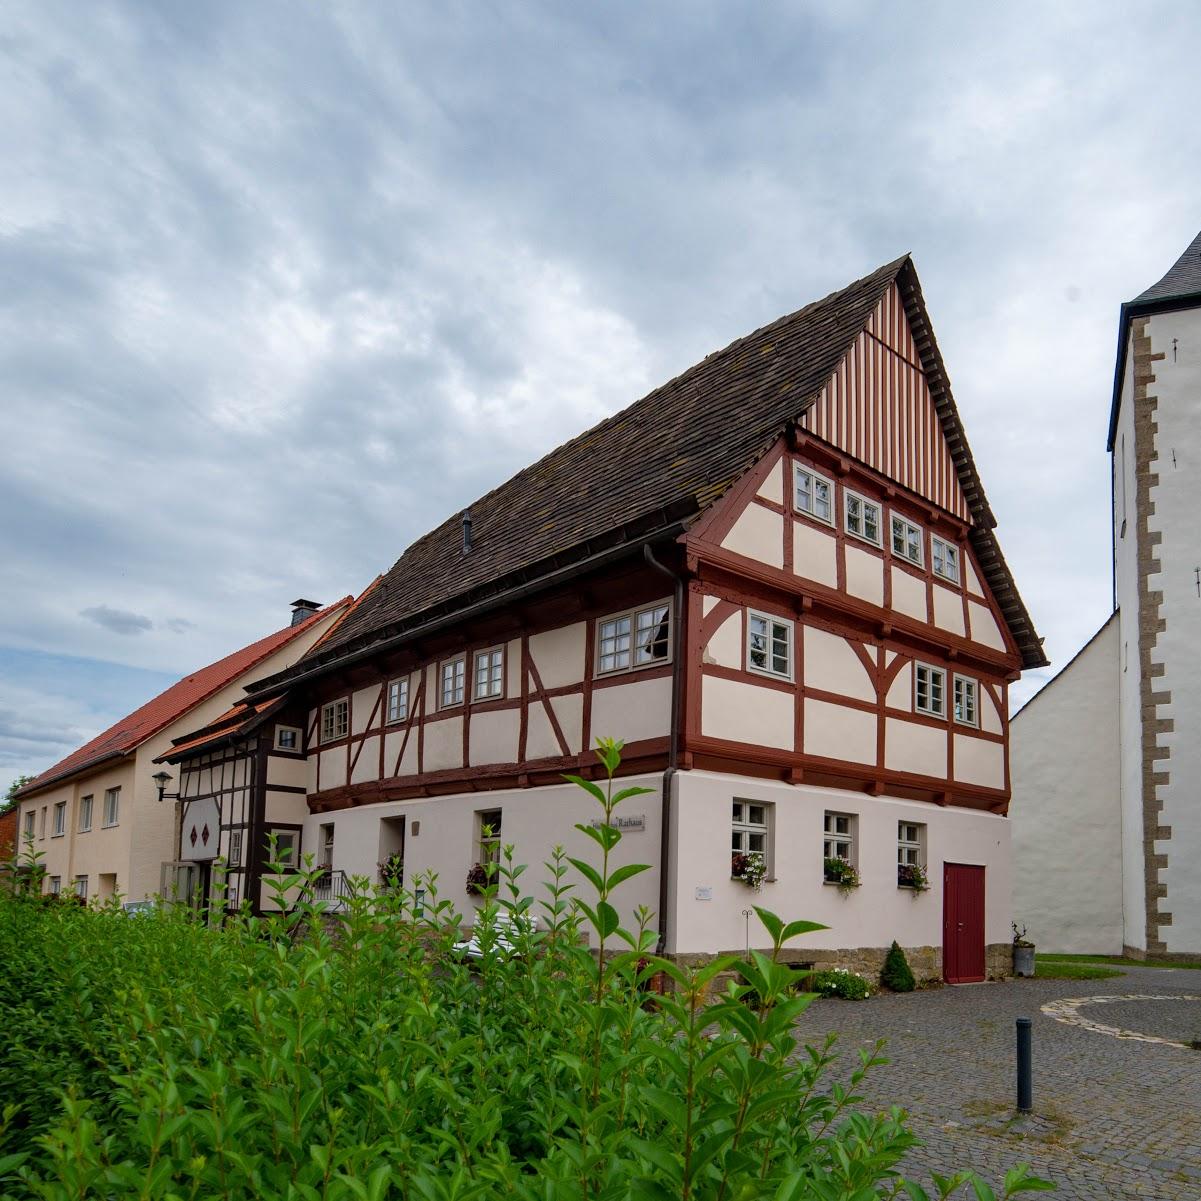 Restaurant "Historisches Rathaus Dringenberg" in Bad Driburg